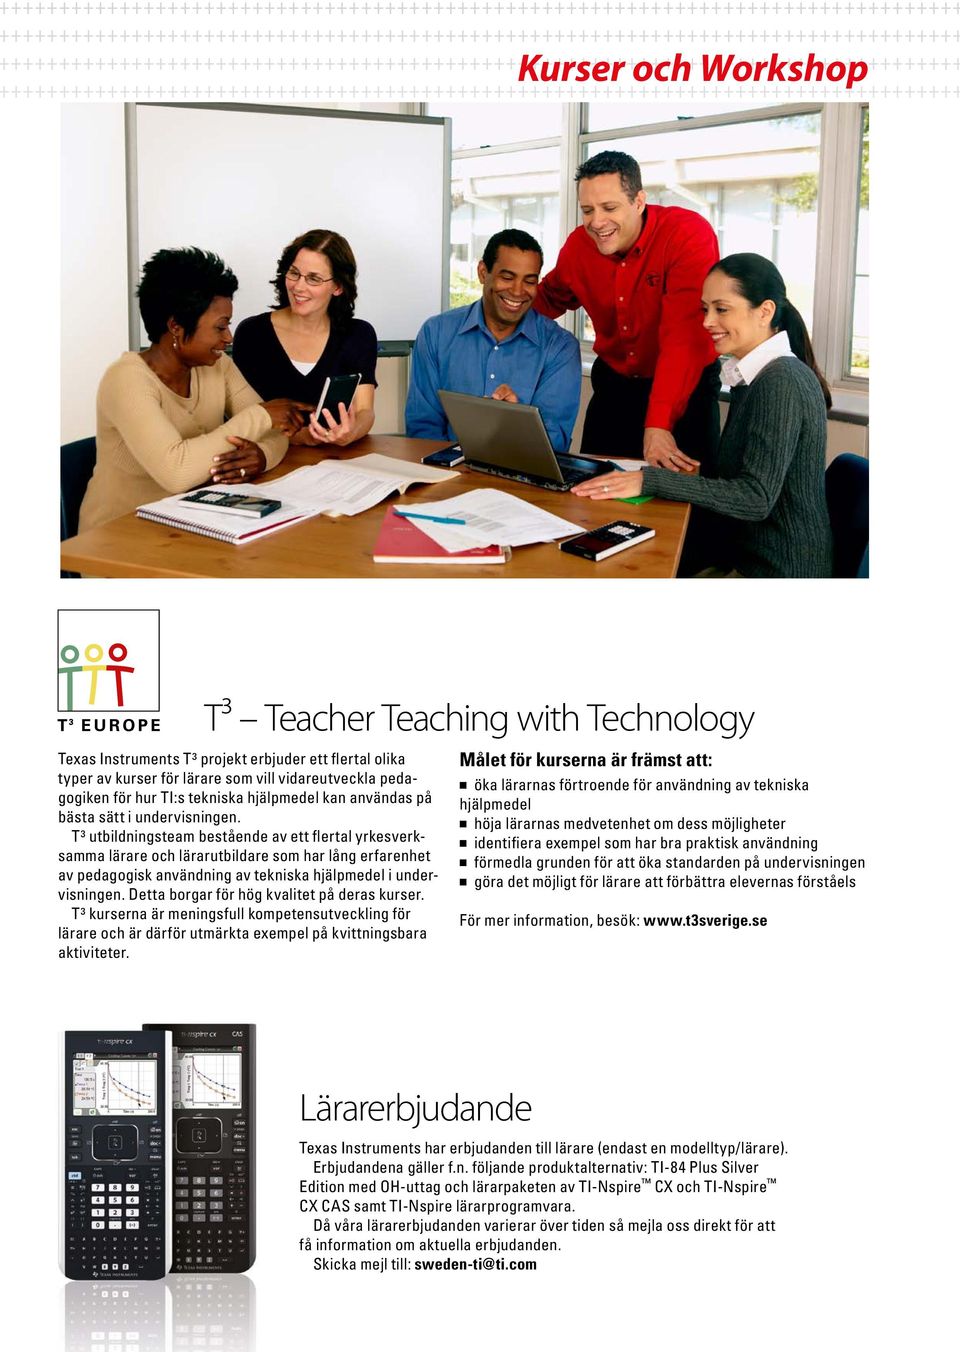 T³ utbildningsteam bestående av ett flertal yrkesverksamma lärare och lärarutbildare som har lång erfarenhet av pedagogisk användning av tekniska hjälpmedel i undervisningen.